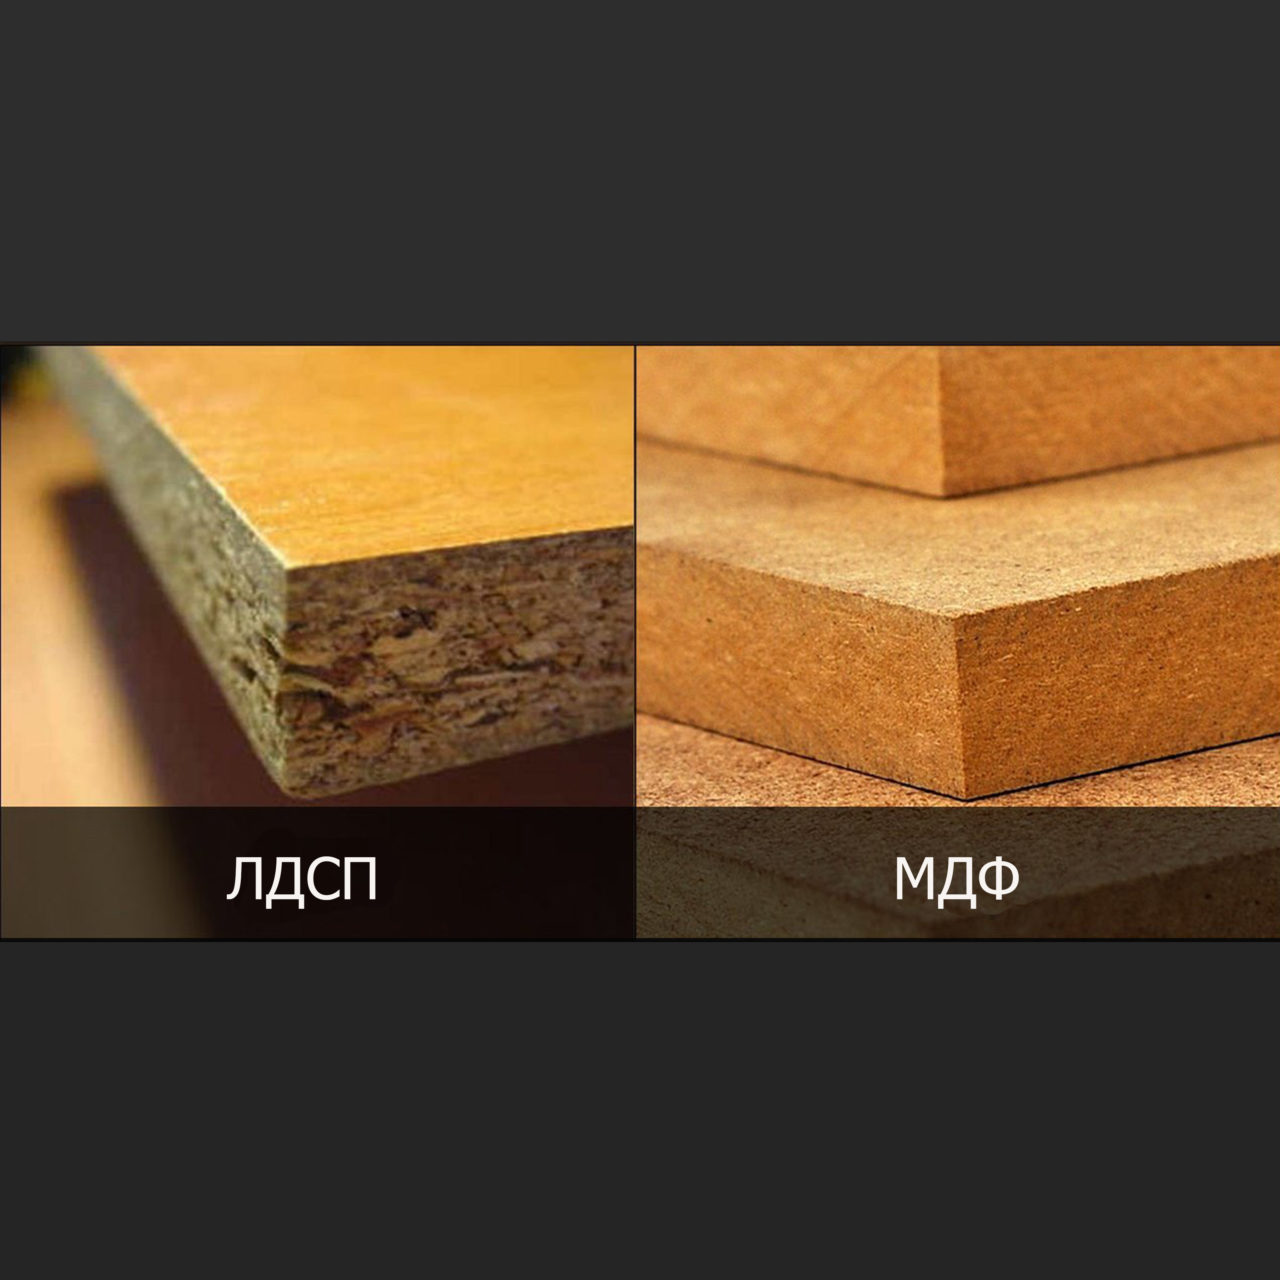 Мебель из дерева – как определить качество